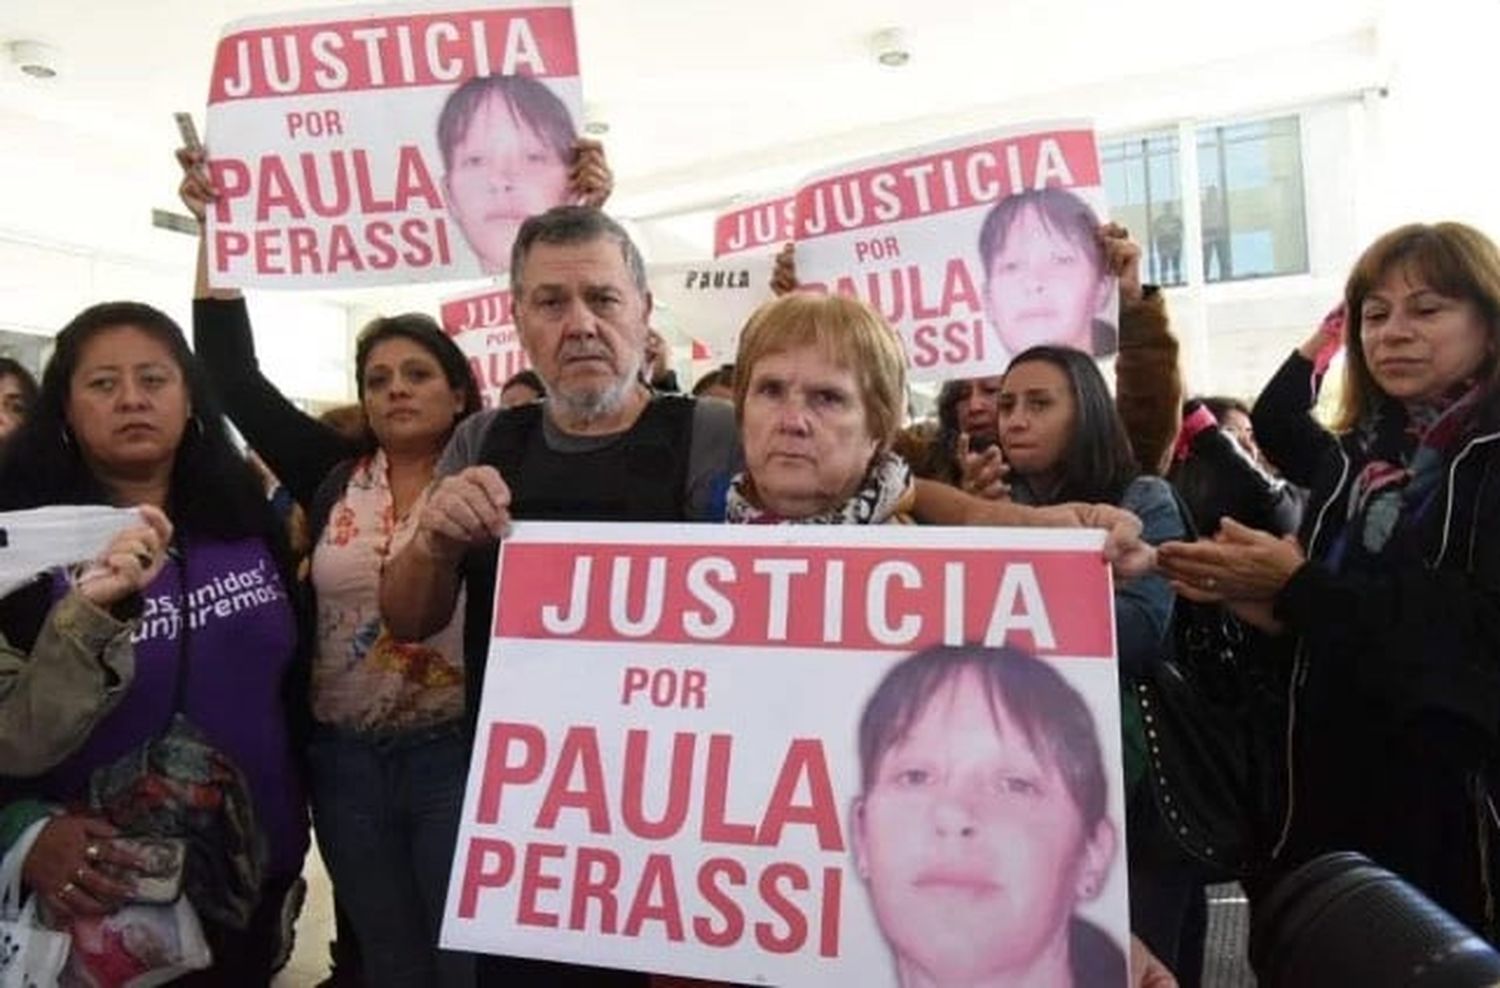 Provincia subió a 30 millones de pesos la recompensa por información sobre Paula Perassi